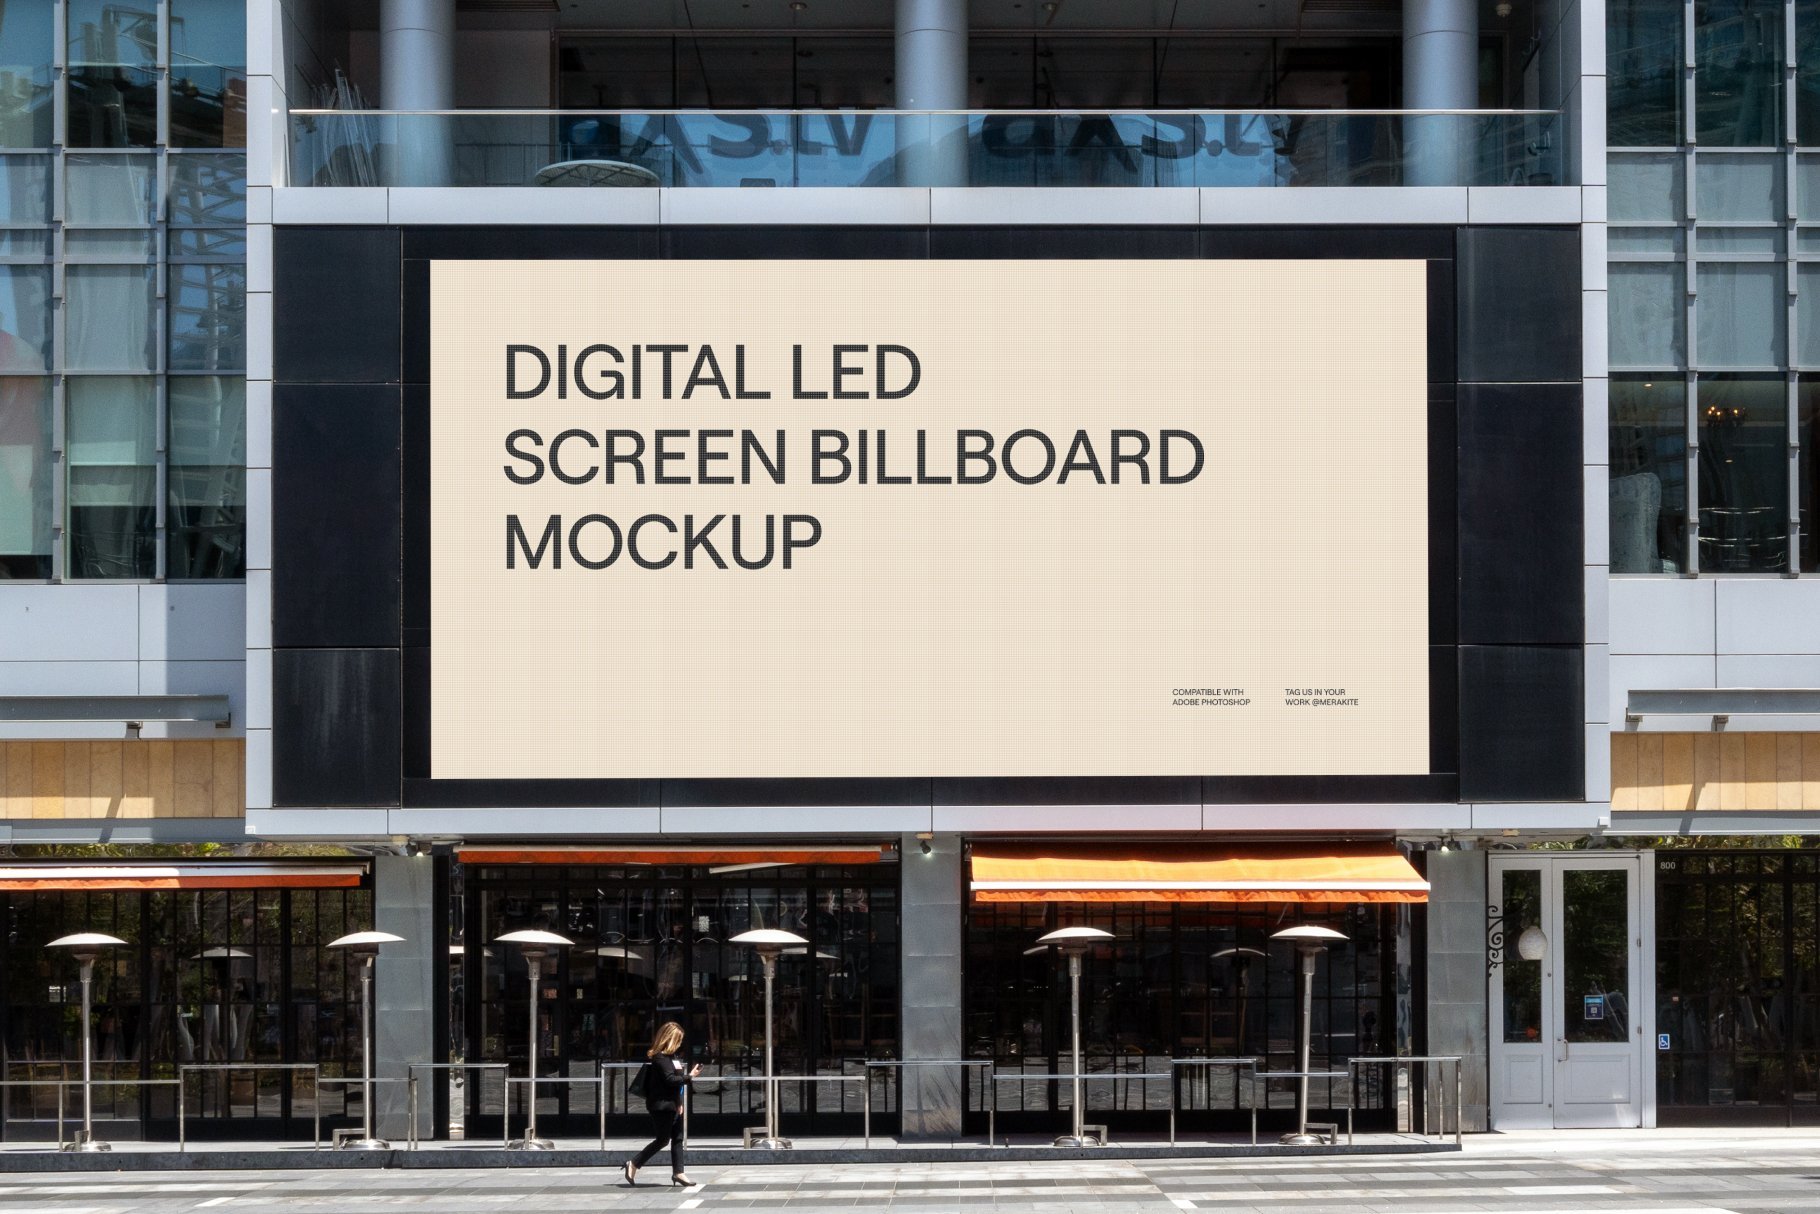 Mega Screen Digital Billboard Mockup preview image.